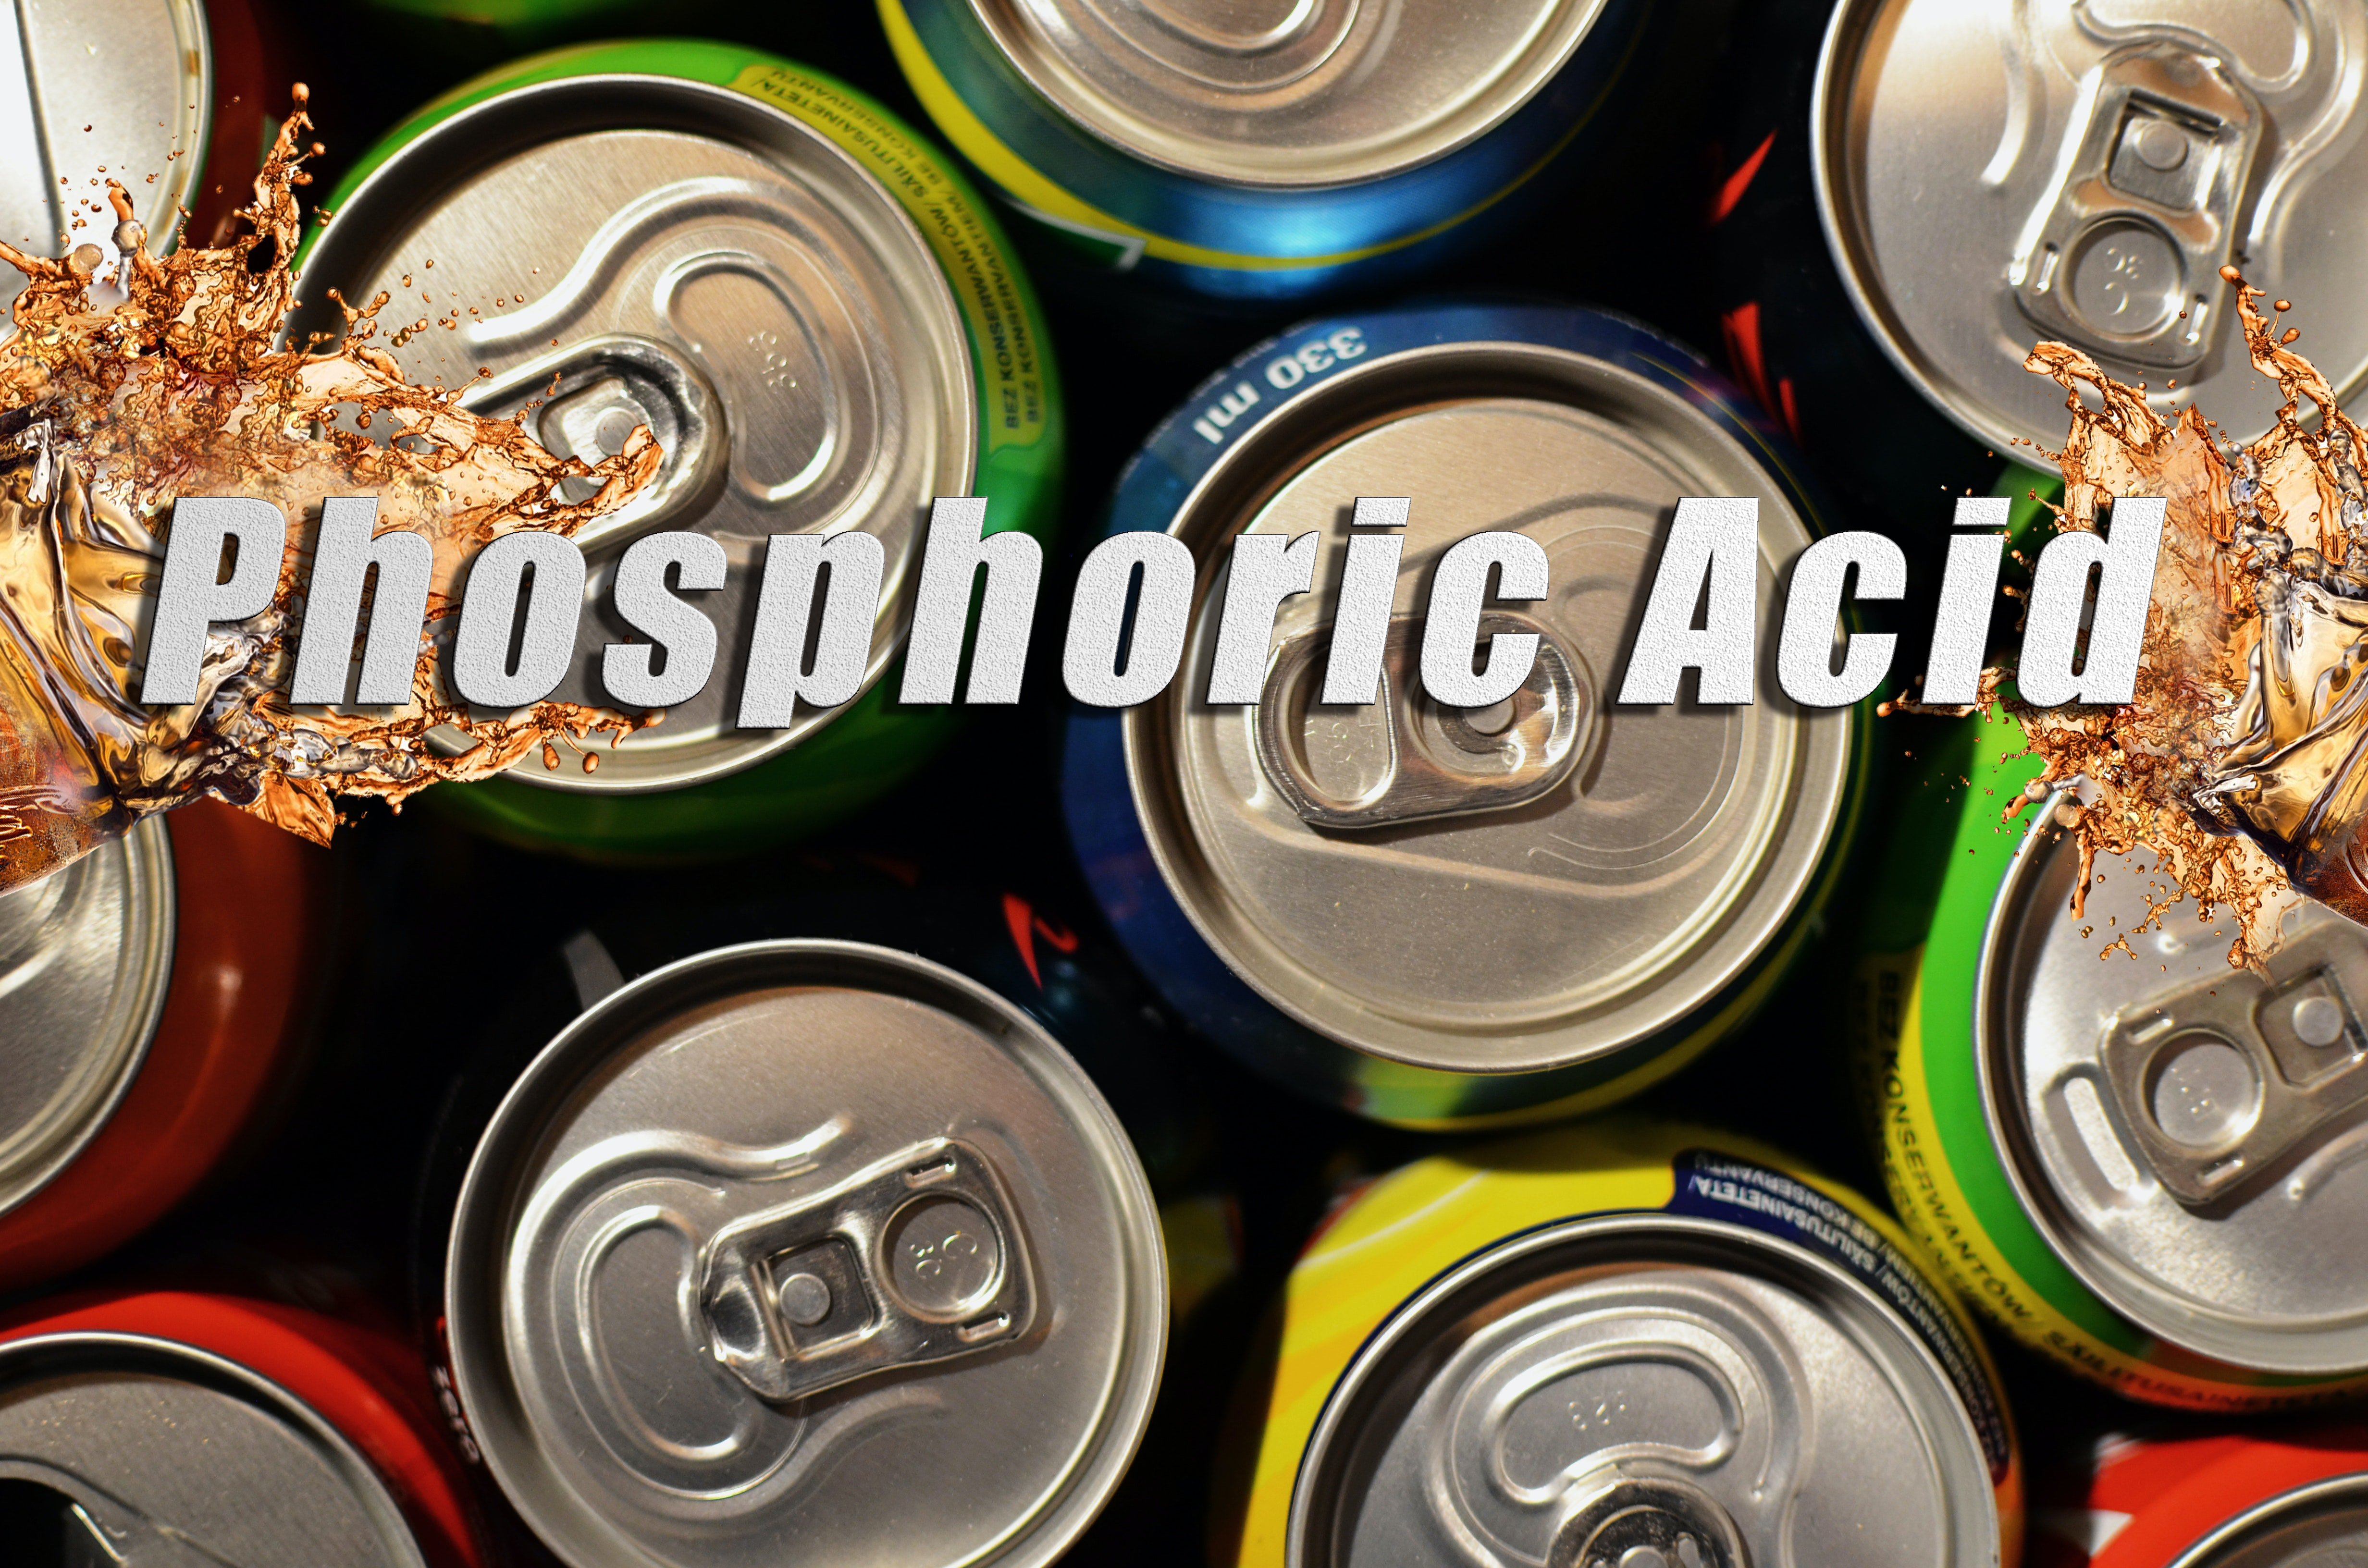 Phosphoric Acid-Always around us